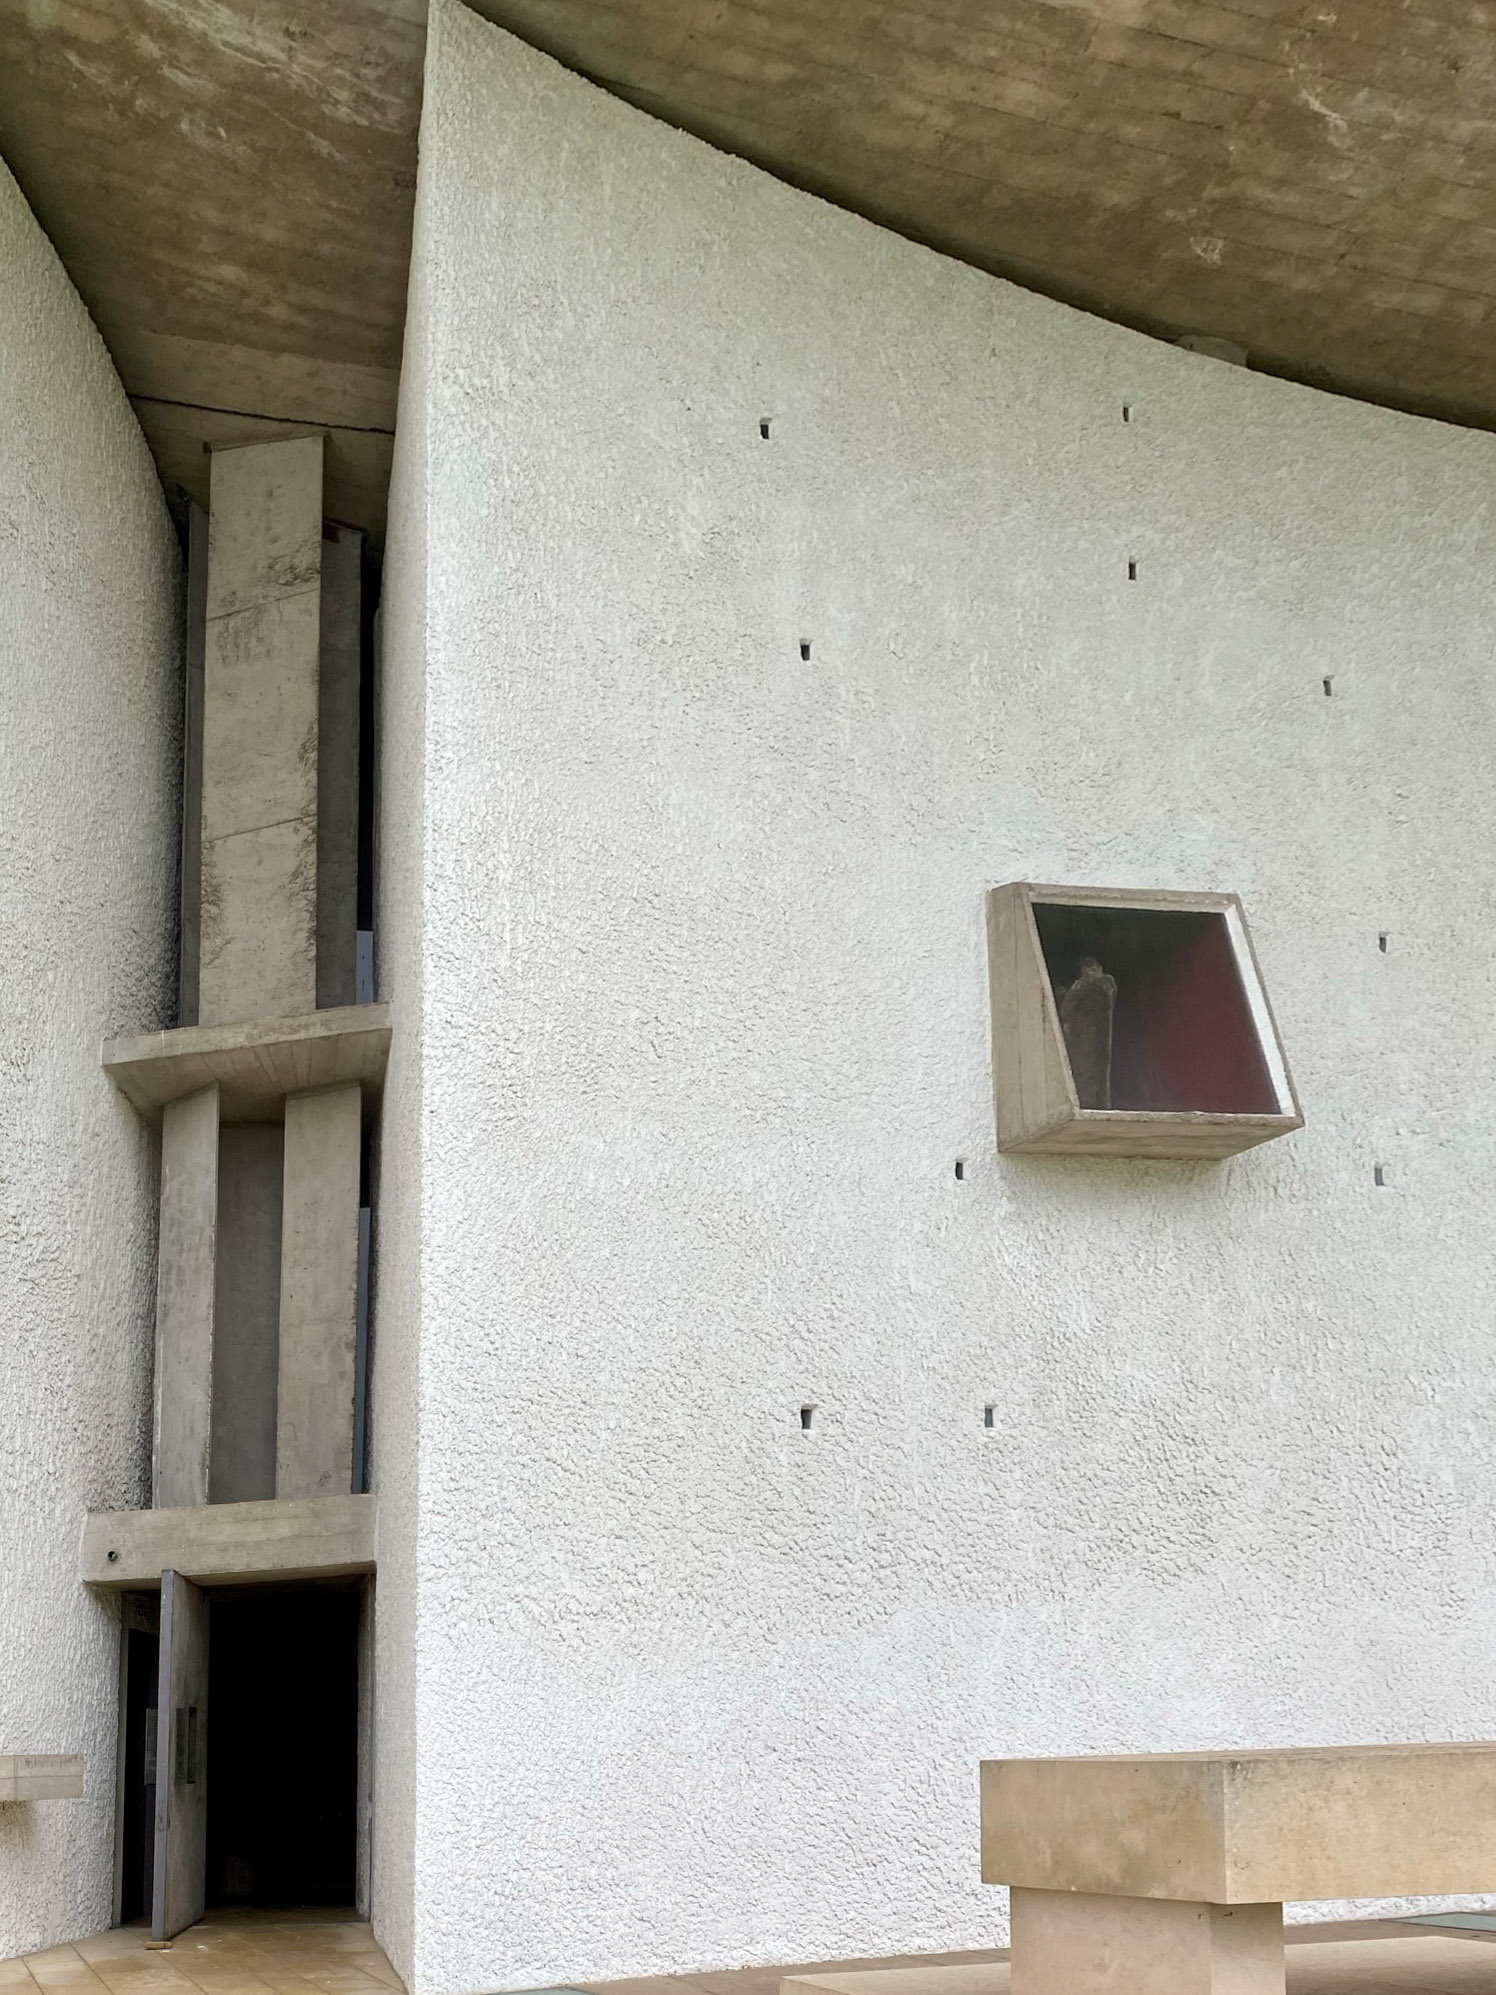 Notre-Dame-du-Haut, 1953-1955. Architect: Le Corbusier. Photo: Daniela Christmann